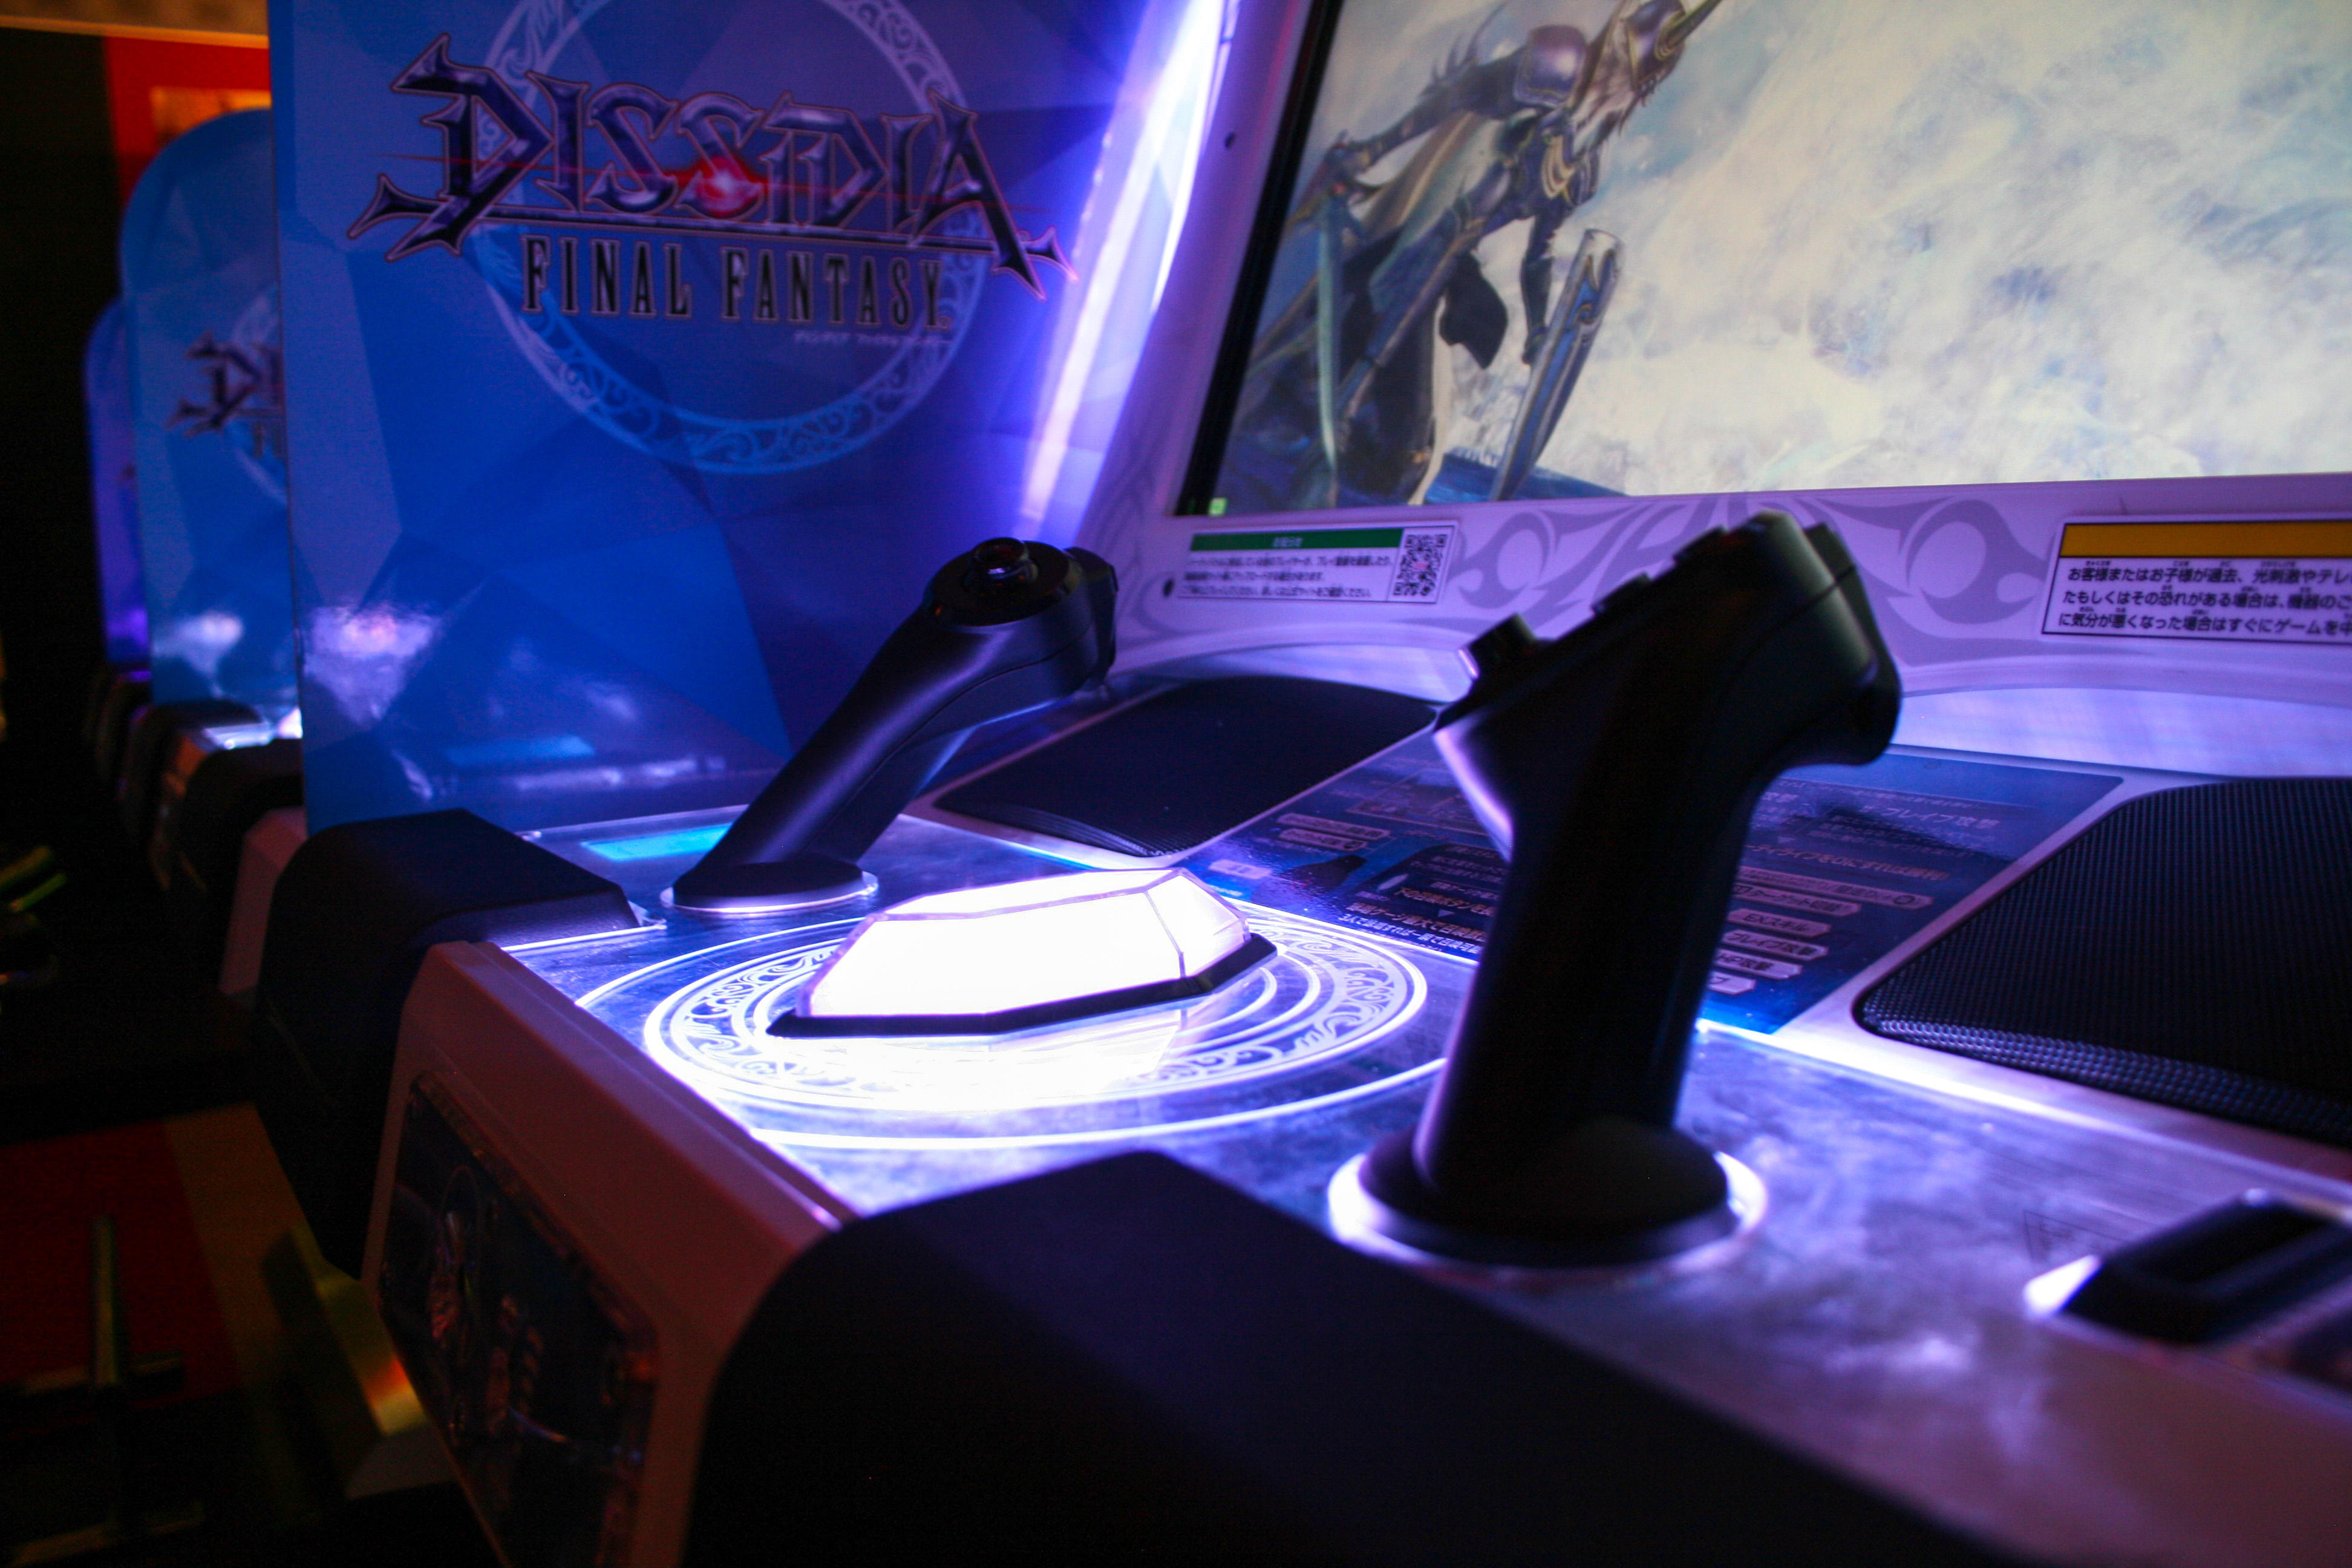 Final Fantasy arcade